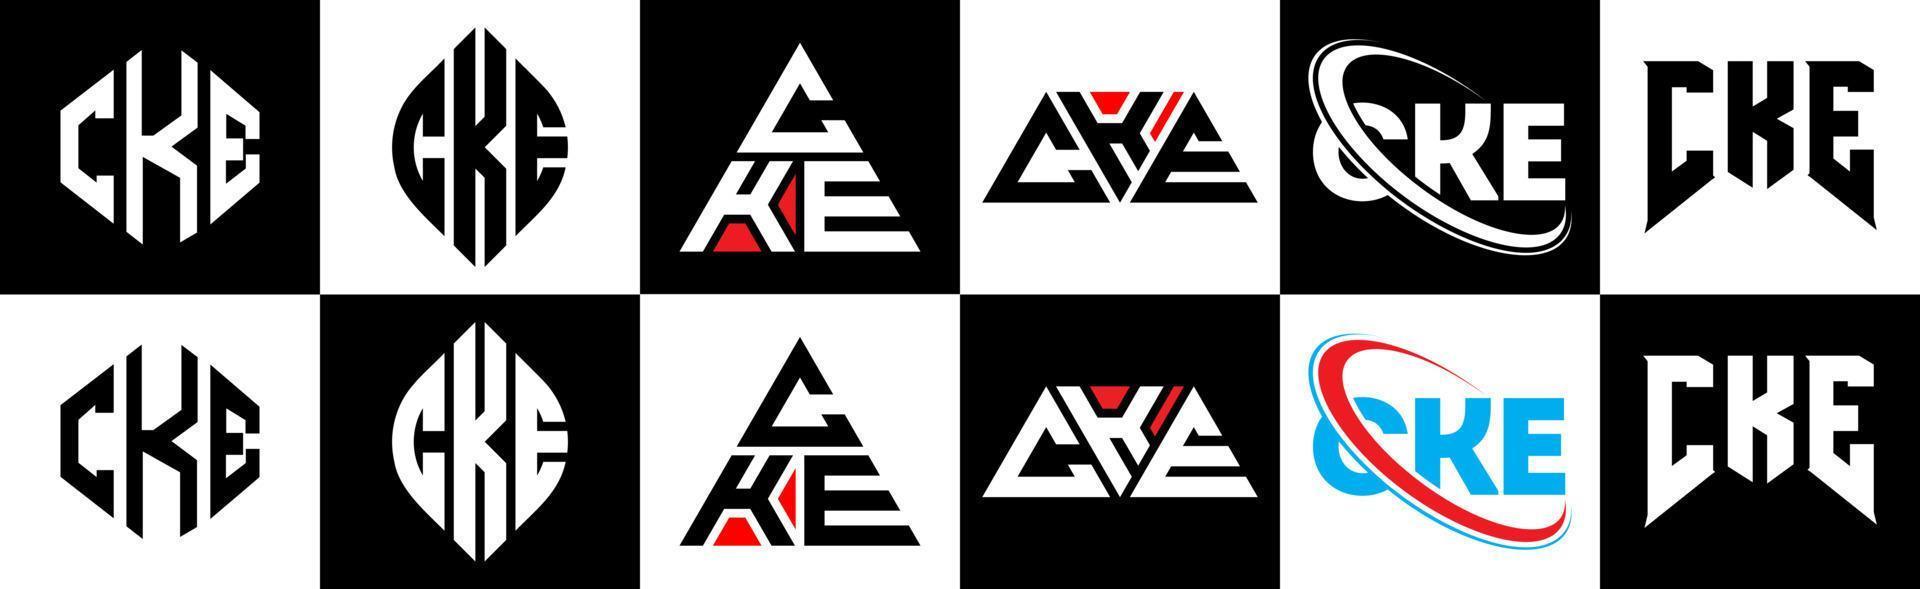 création de logo de lettre cke en six styles. cke polygone, cercle, triangle, hexagone, style plat et simple avec logo de lettre de variation de couleur noir et blanc dans un plan de travail. cke logo minimaliste et classique vecteur